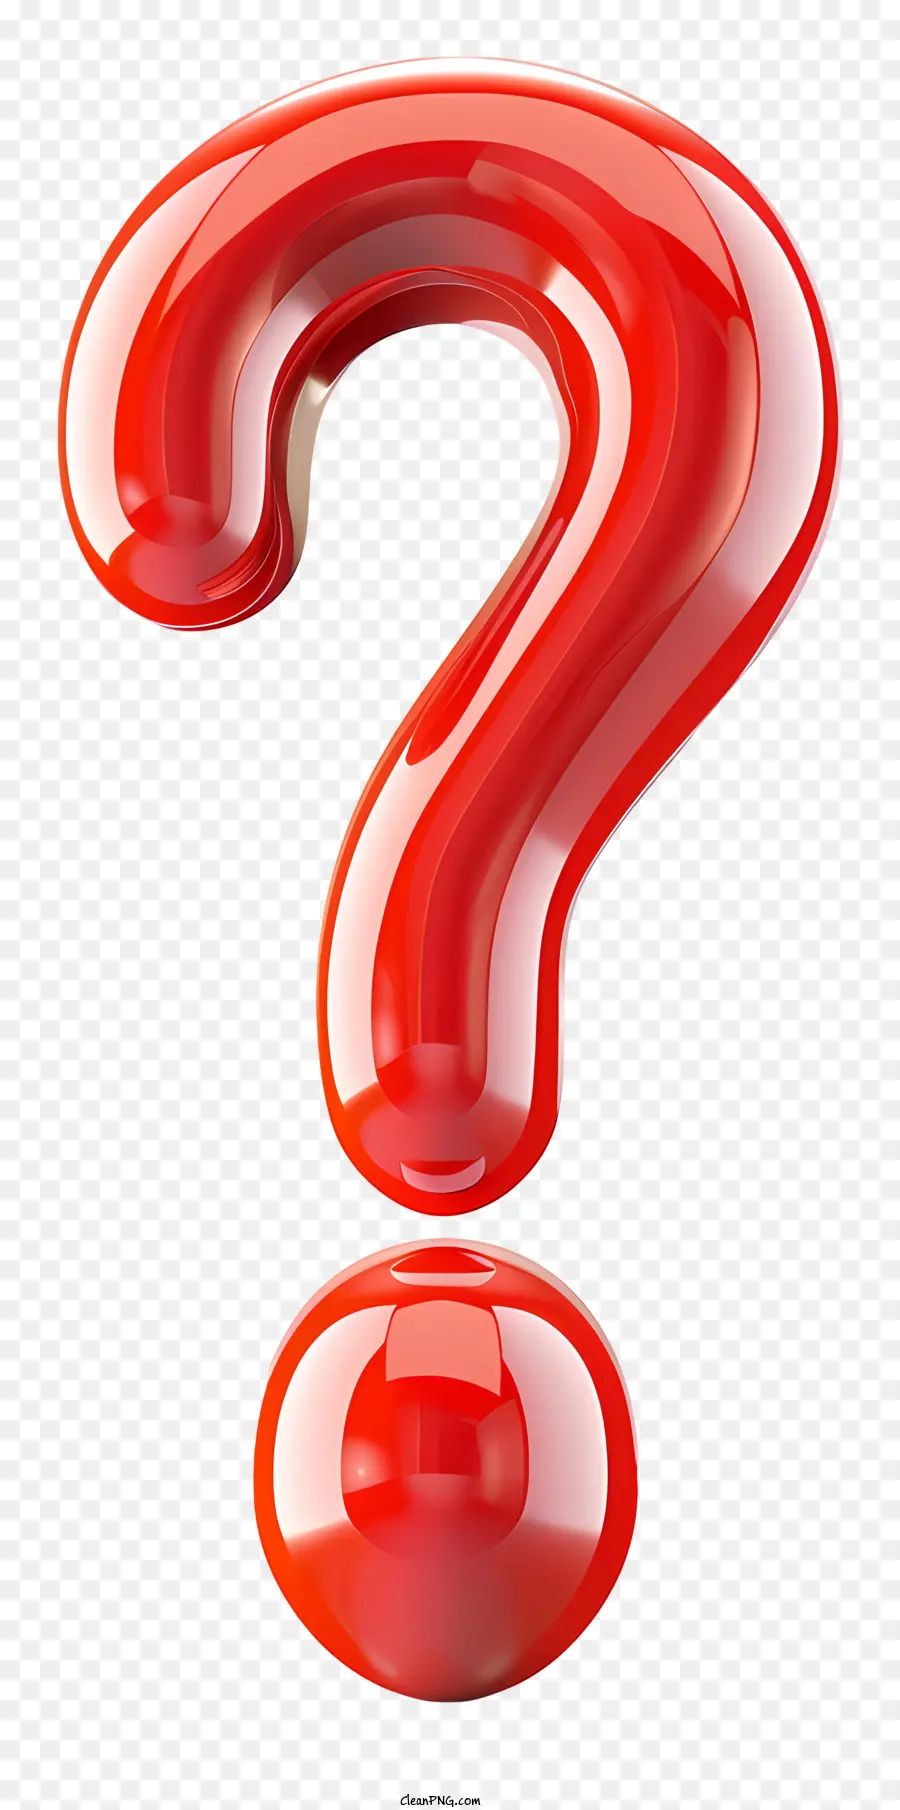 Fragezeichen - Durchscheinende rote Kunststoffkugel mit Fragezeichen